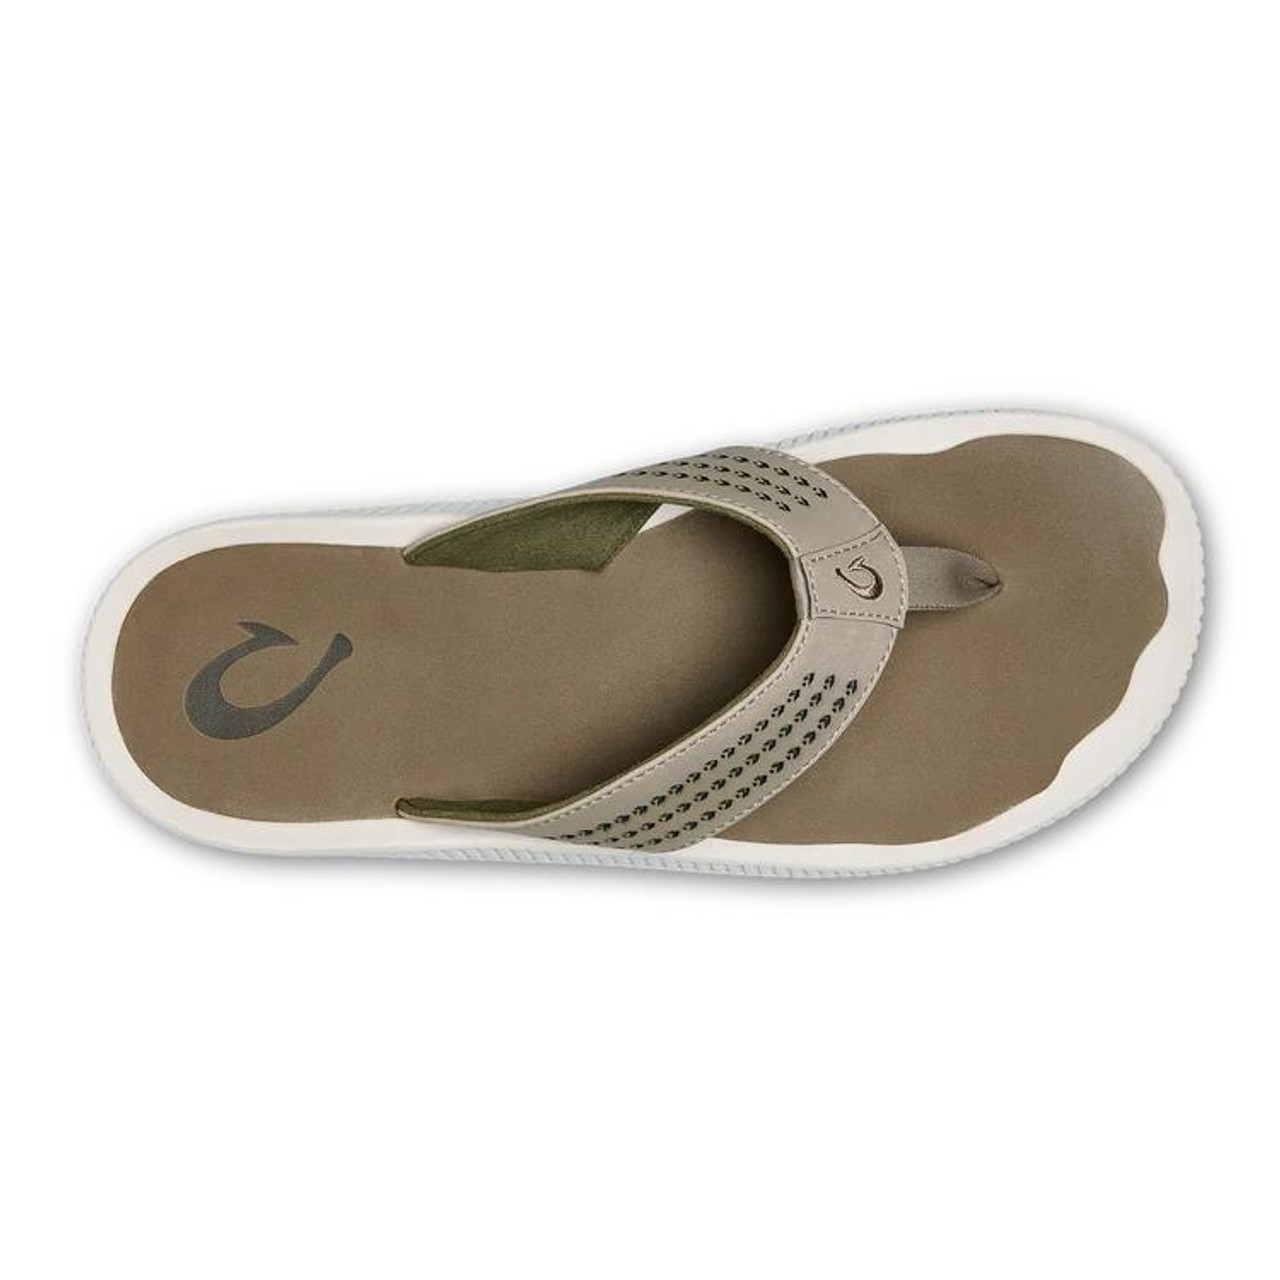 DTBPRQ Men's Beach Sandals, Quick-Dry Flip-Flop Slides, Water Resistant  Suede Lining & Wet Grip Soles, Soft Comfort Fit & Arch Support - Walmart.com